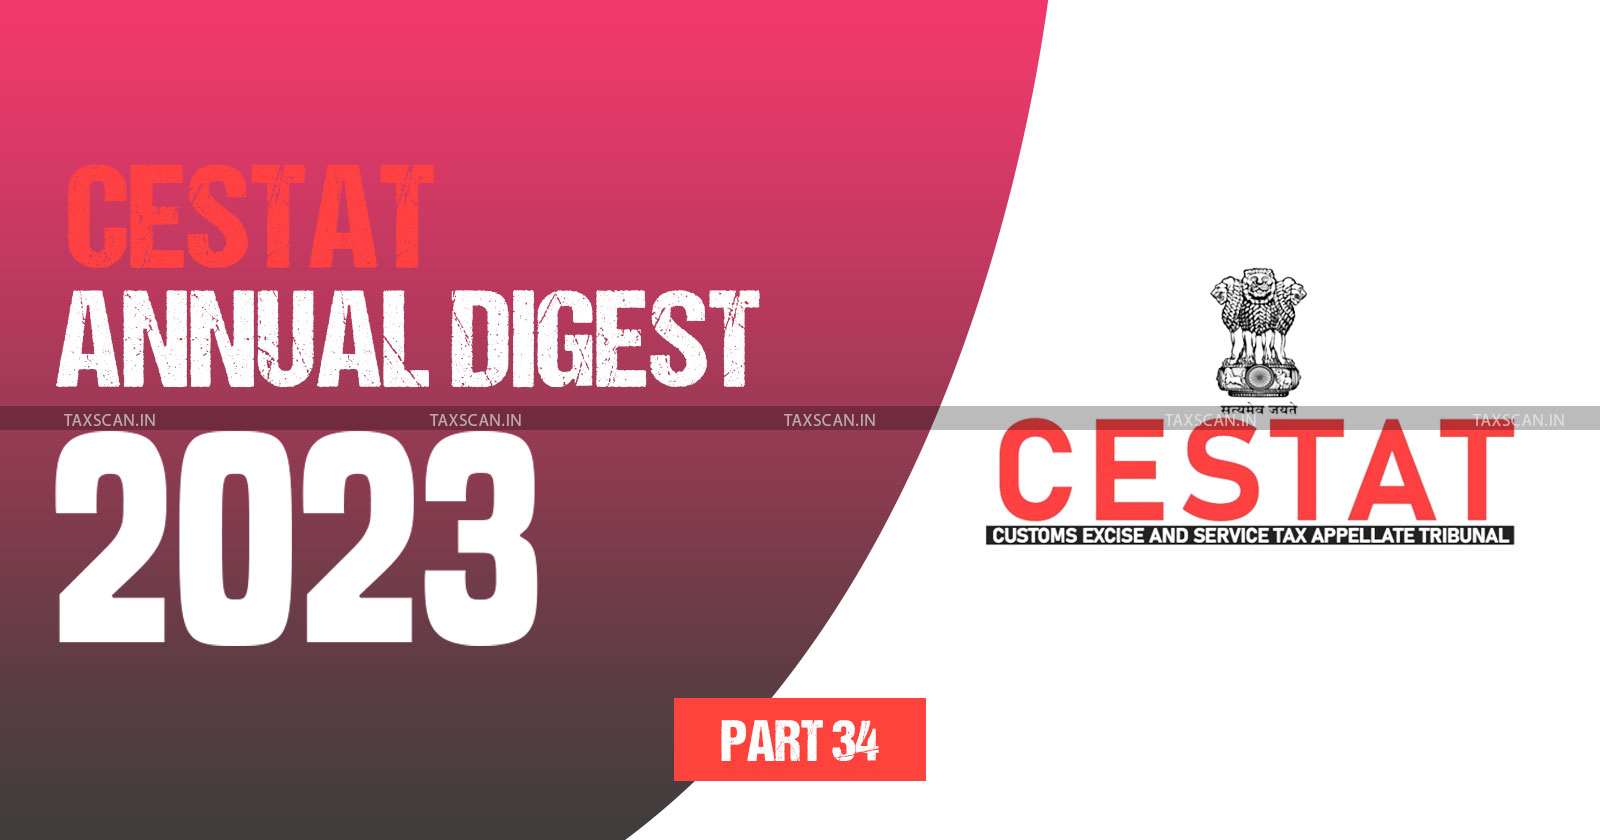 Annual Digest 2023 CESTAT - Annual Digest 2023 - cestat - PART 34 - TAXSCAN